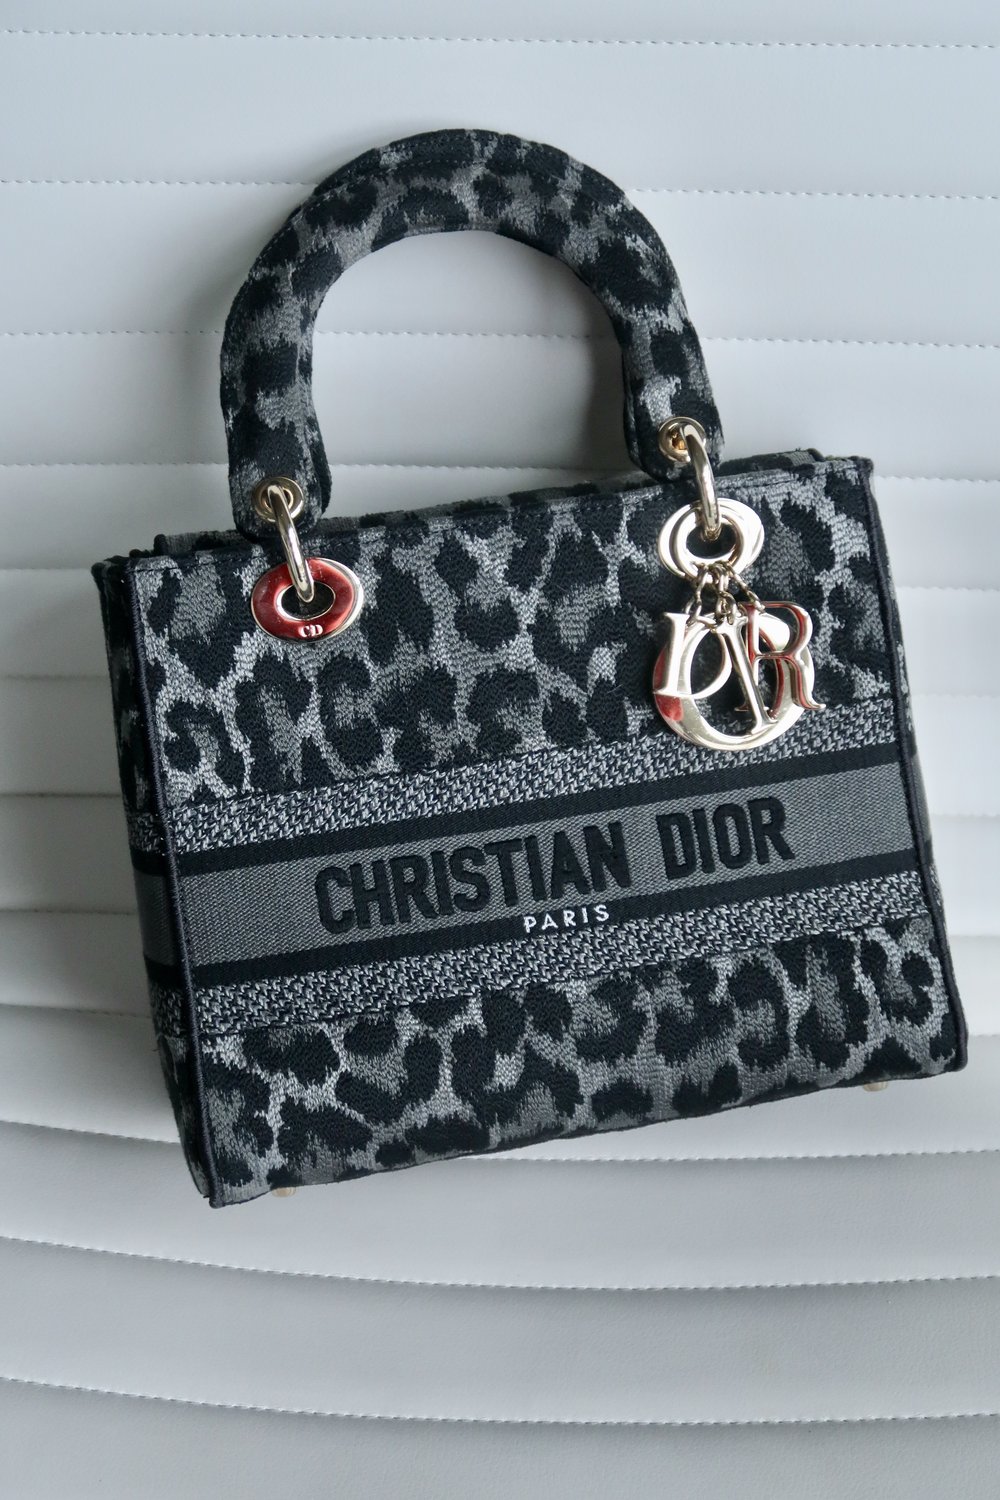 Dior book tote mini, Dhgate Dior bag